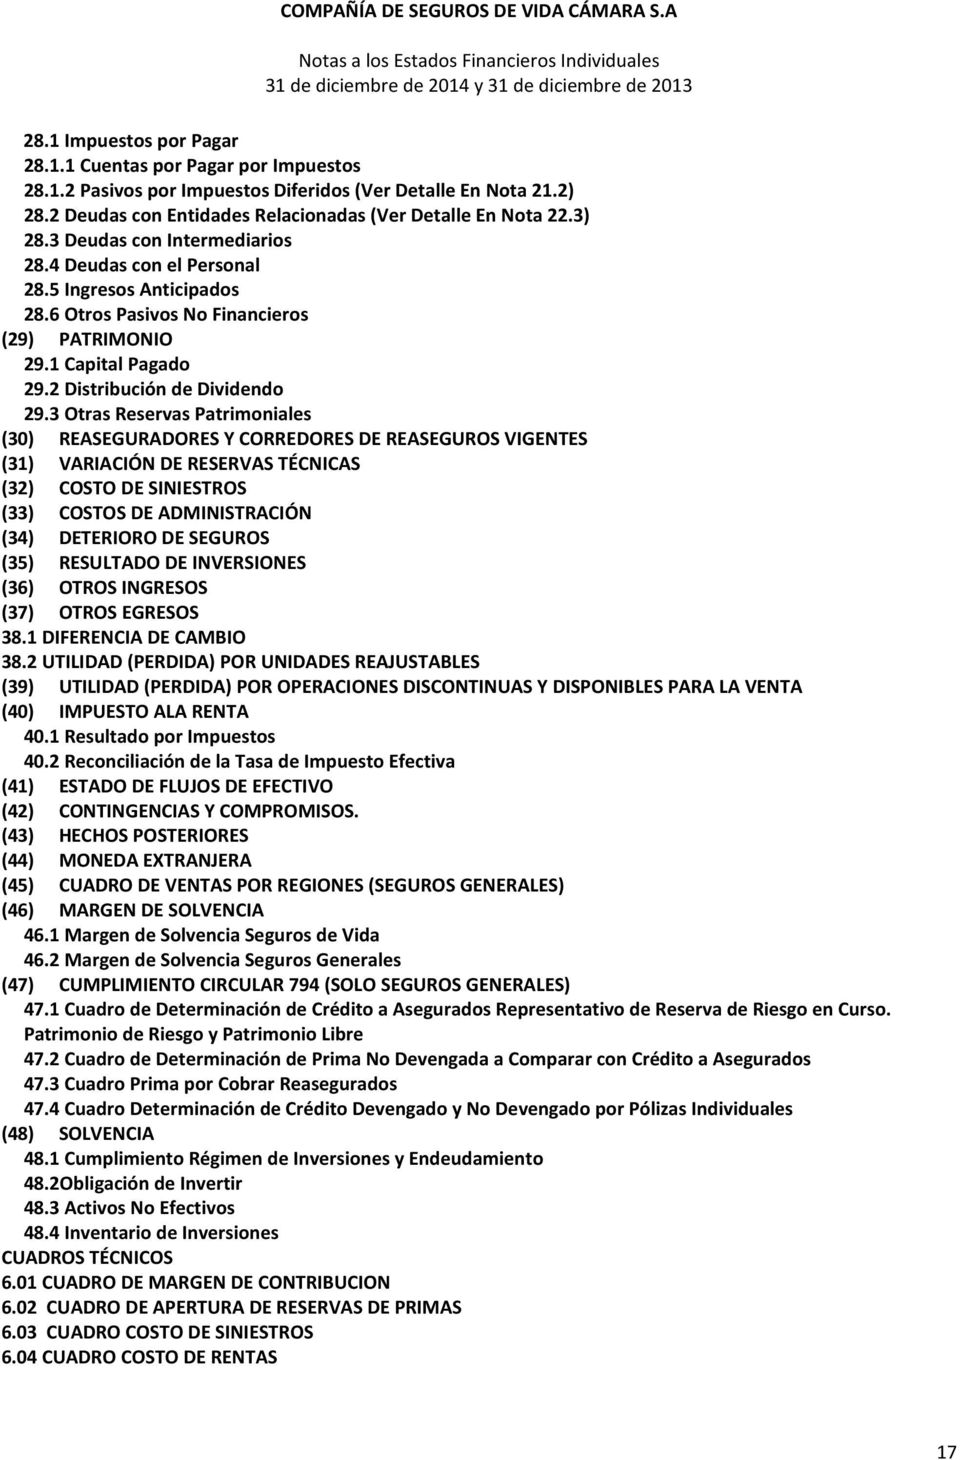 3 Otras Reservas Patrimoniales (30) REASEGURADORES Y CORREDORES DE REASEGUROS VIGENTES (31) VARIACIÓN DE RESERVAS TÉCNICAS (32) COSTO DE SINIESTROS (33) COSTOS DE ADMINISTRACIÓN (34) DETERIORO DE